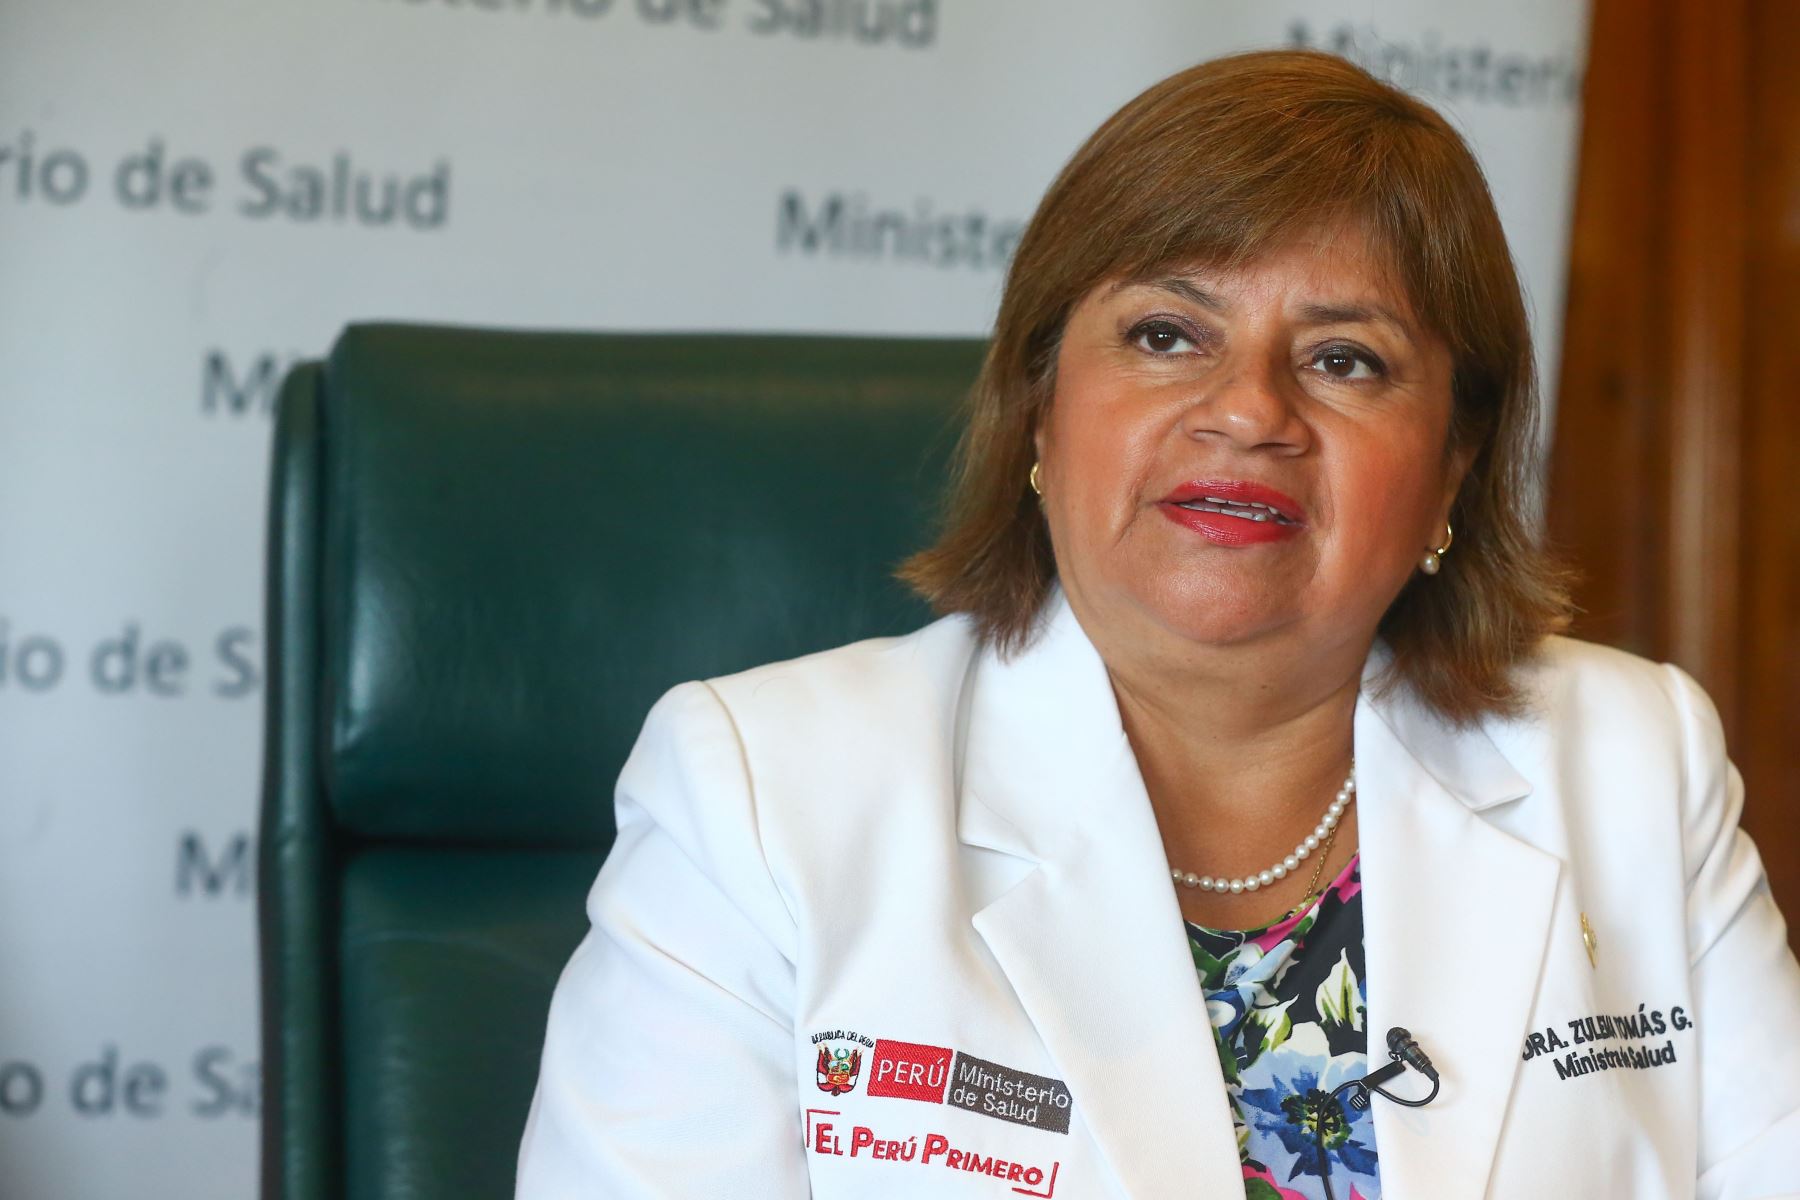 La ex ministra de Salud, Zulema Tomas se recuperó de Covid - 19 y apoya a pacientes afectados por Civid- 19 actualmente. ANDINA/Héctor Vinces